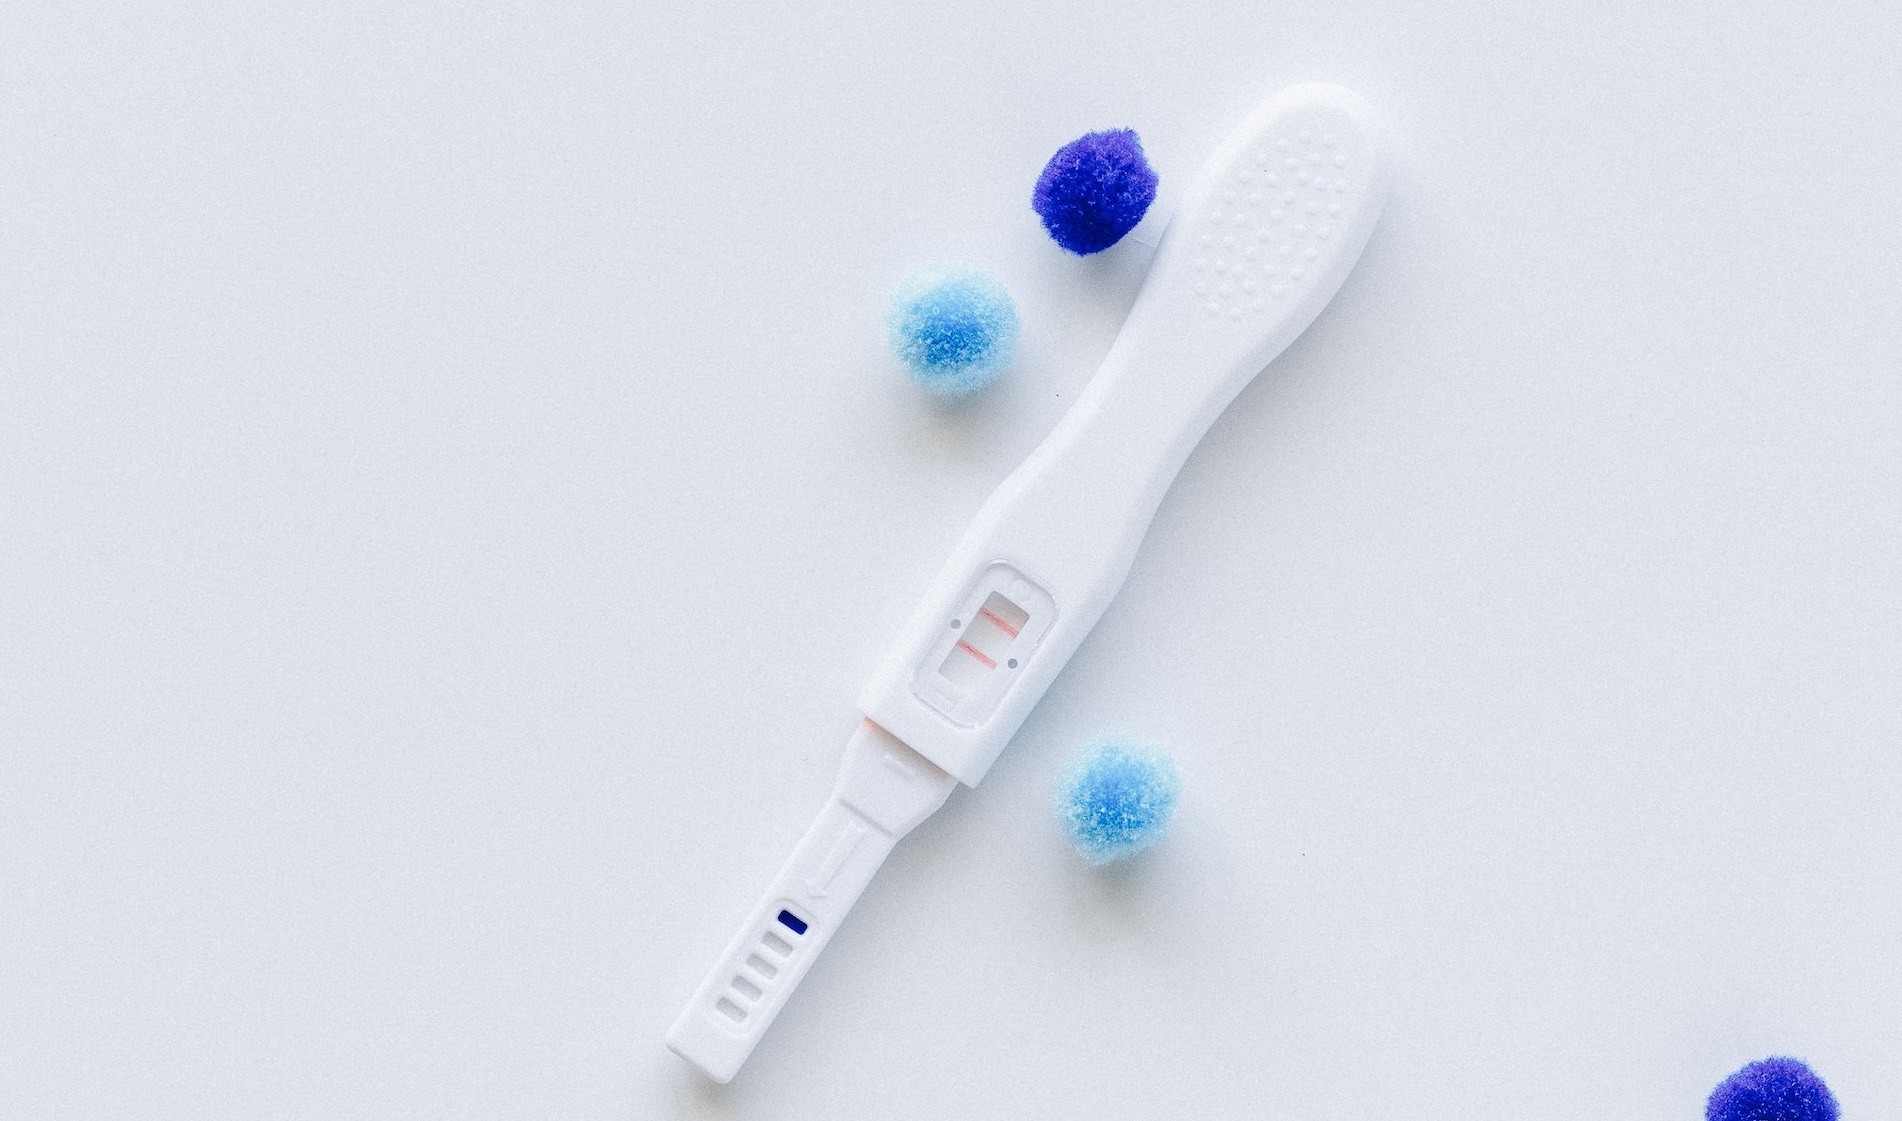 Test de embarazo: ¿Qué sucede si un hombre orina una pruba de embarazo y el resultado es positivo?